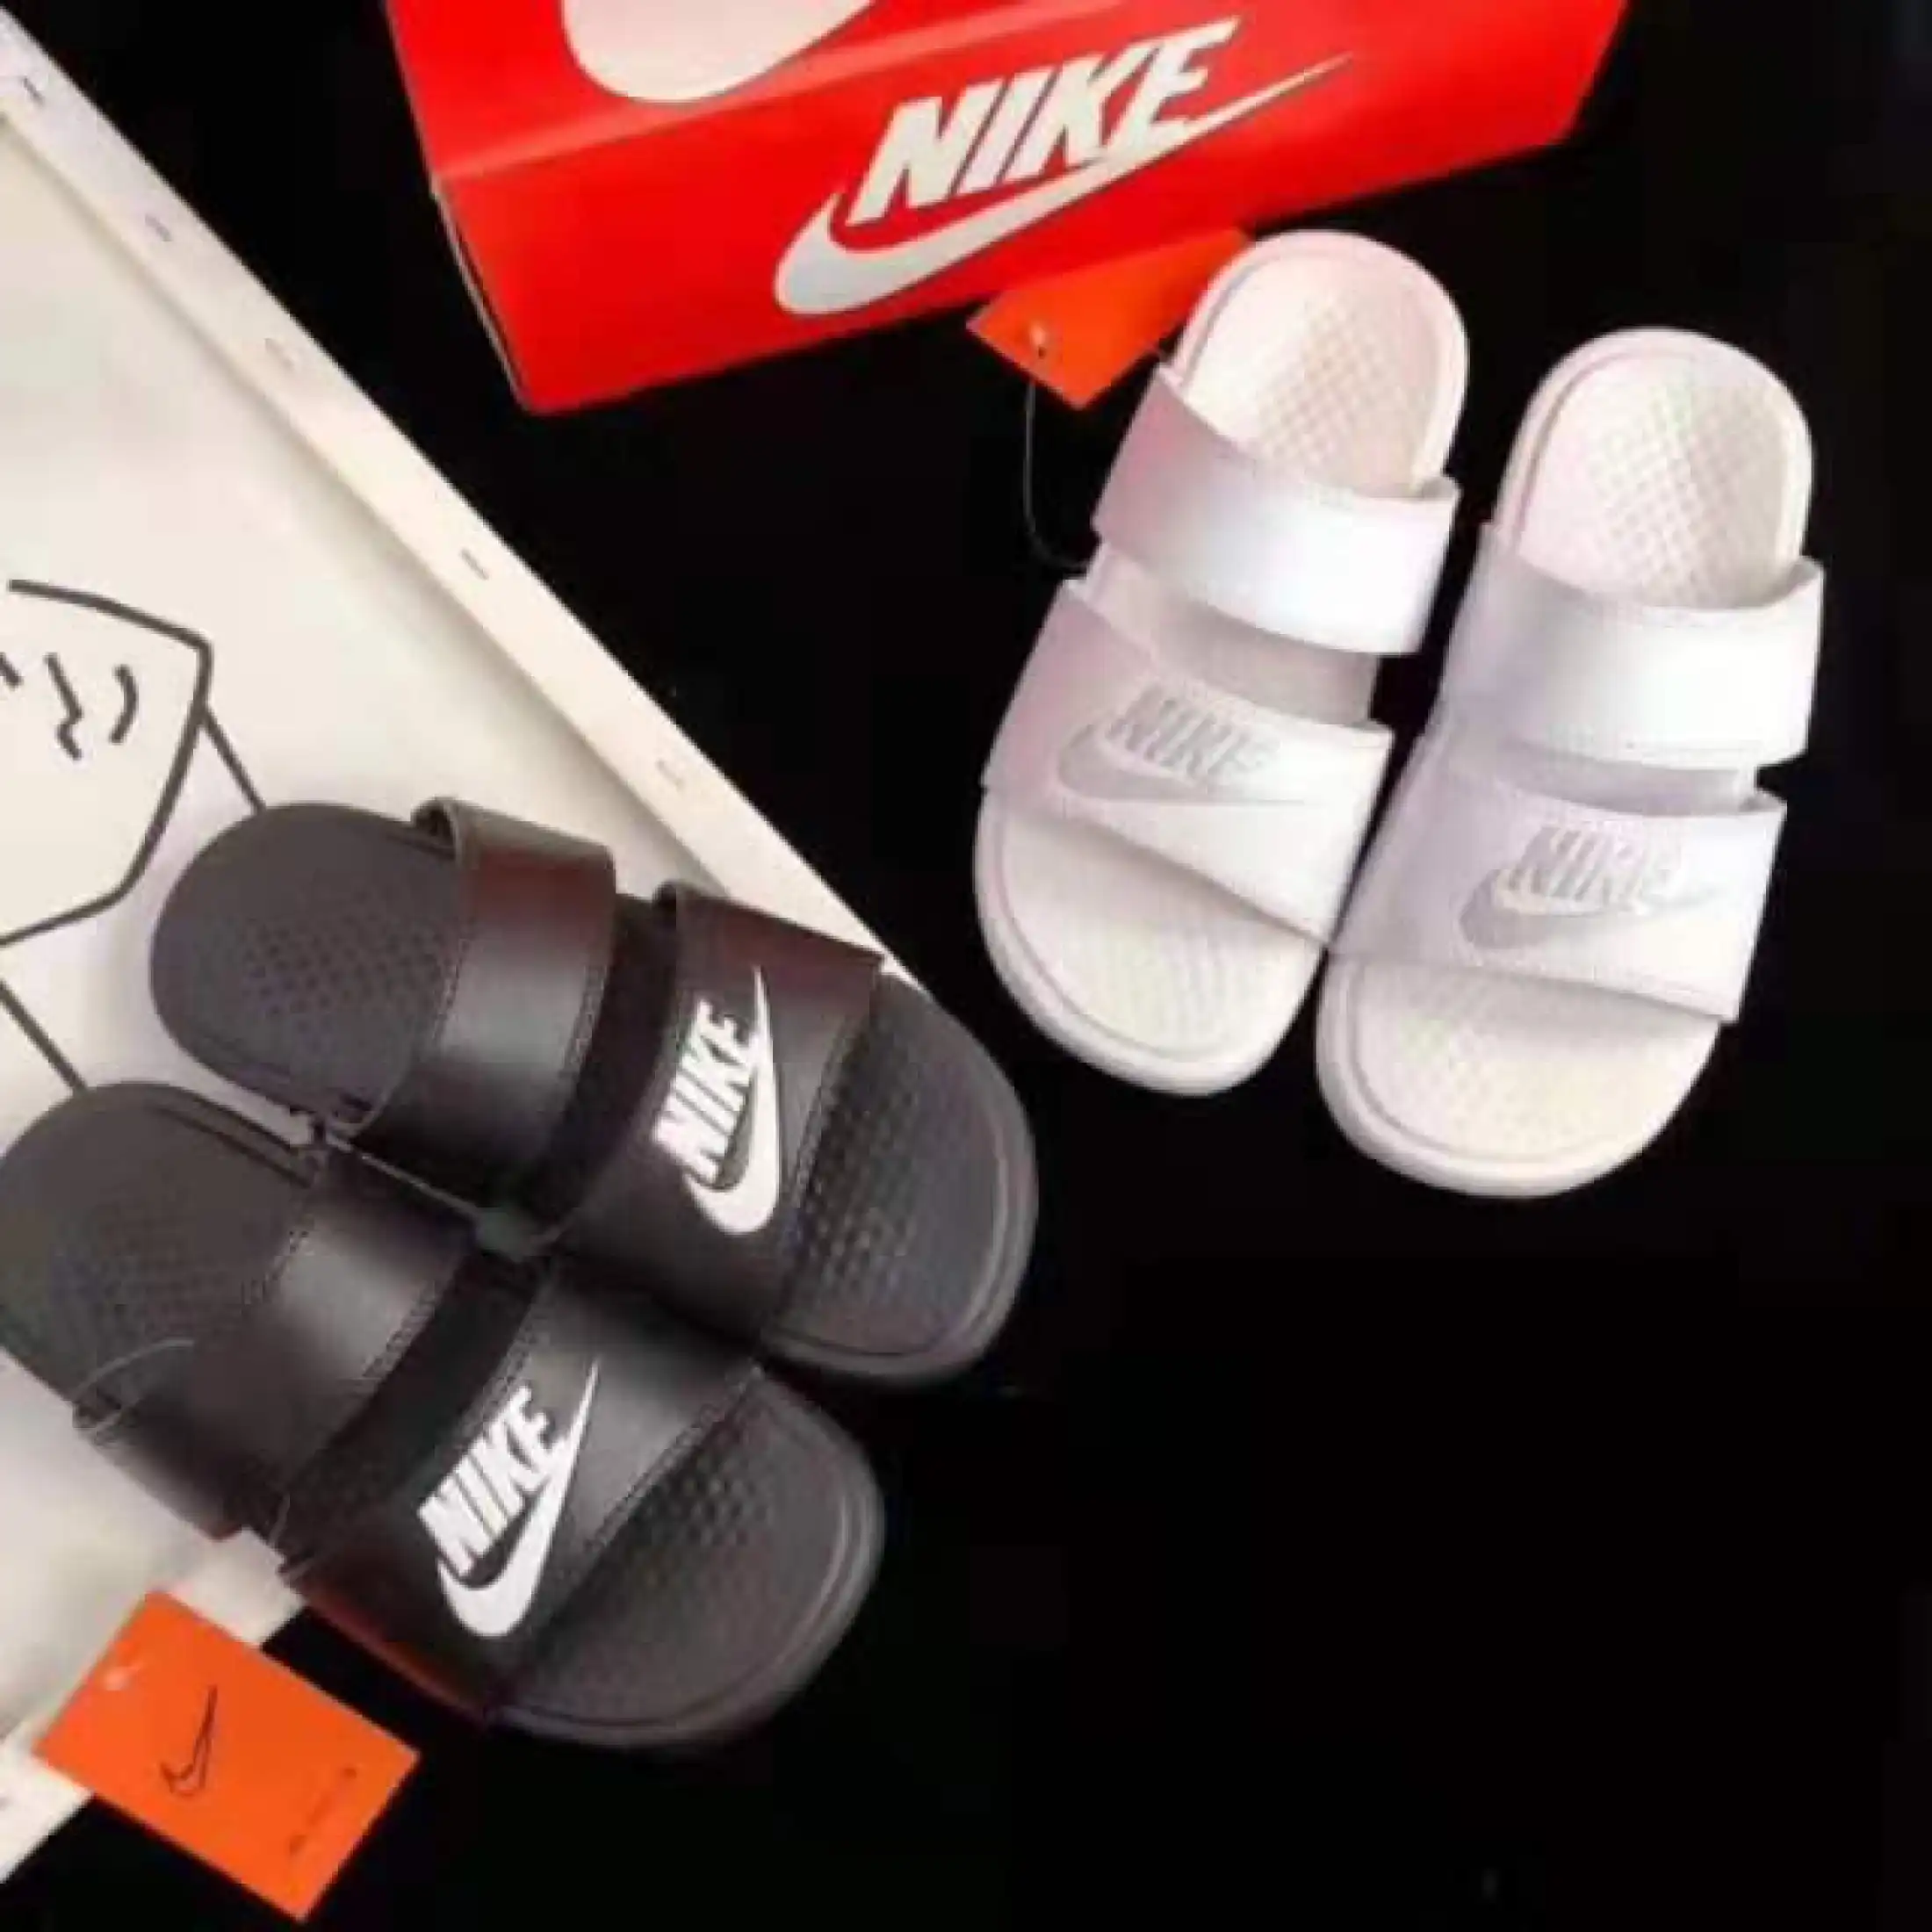 new nike slippers 2020